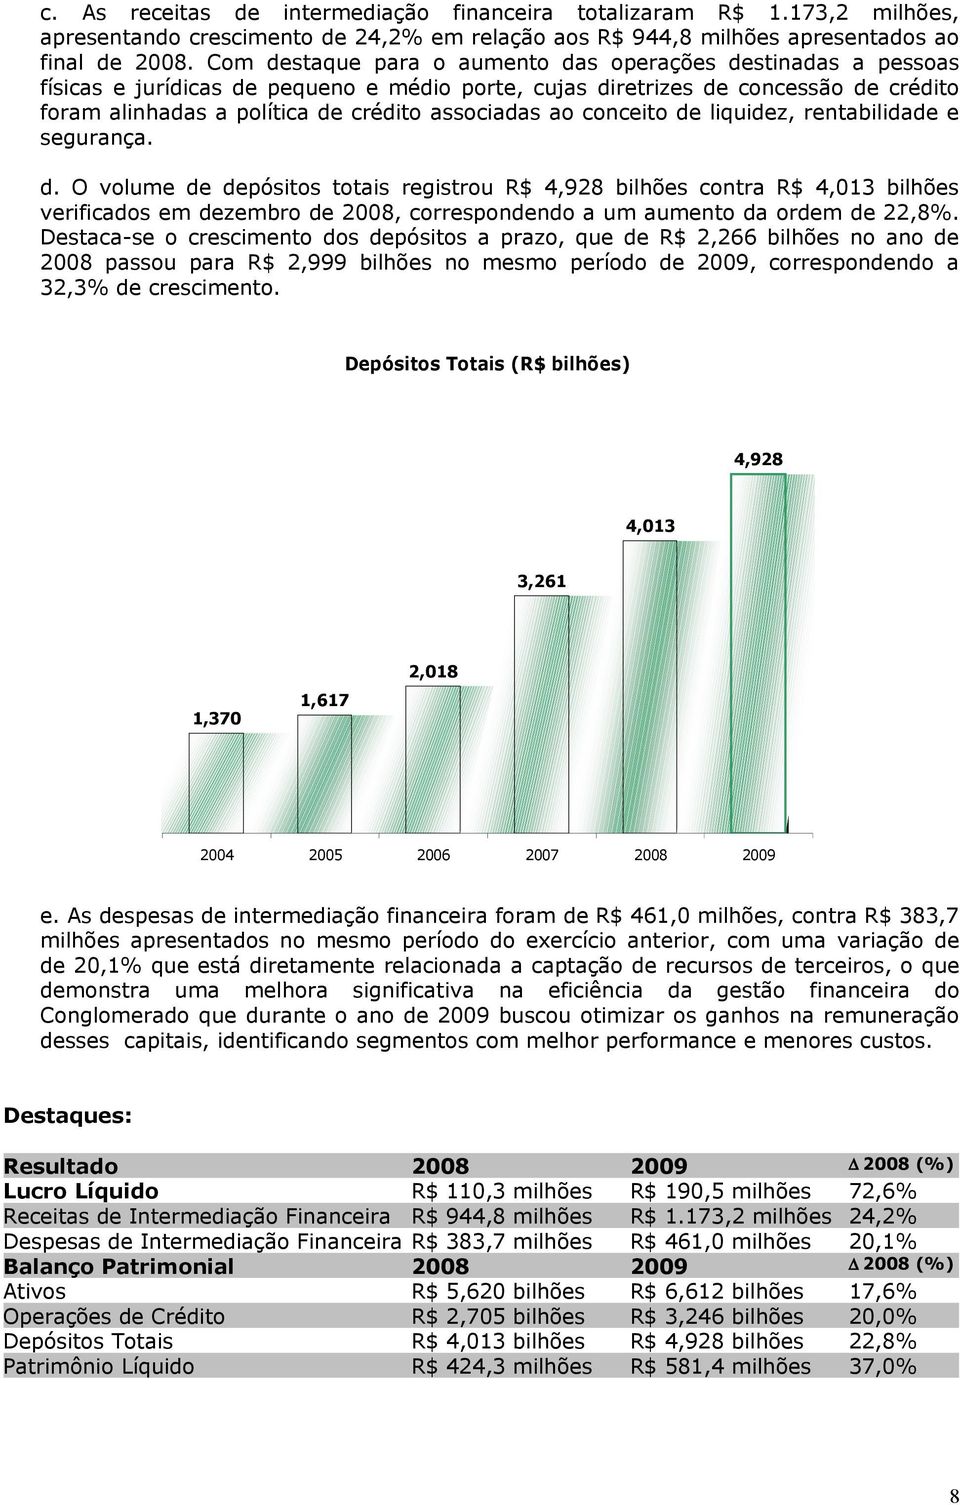 ao conceito de liquidez, rentabilidade e segurança. d. O volume de depósitos totais registrou R$ 4,928 bilhões contra R$ 4,013 bilhões verificados em dezembro de 2008, correspondendo a um aumento da ordem de 22,8%.